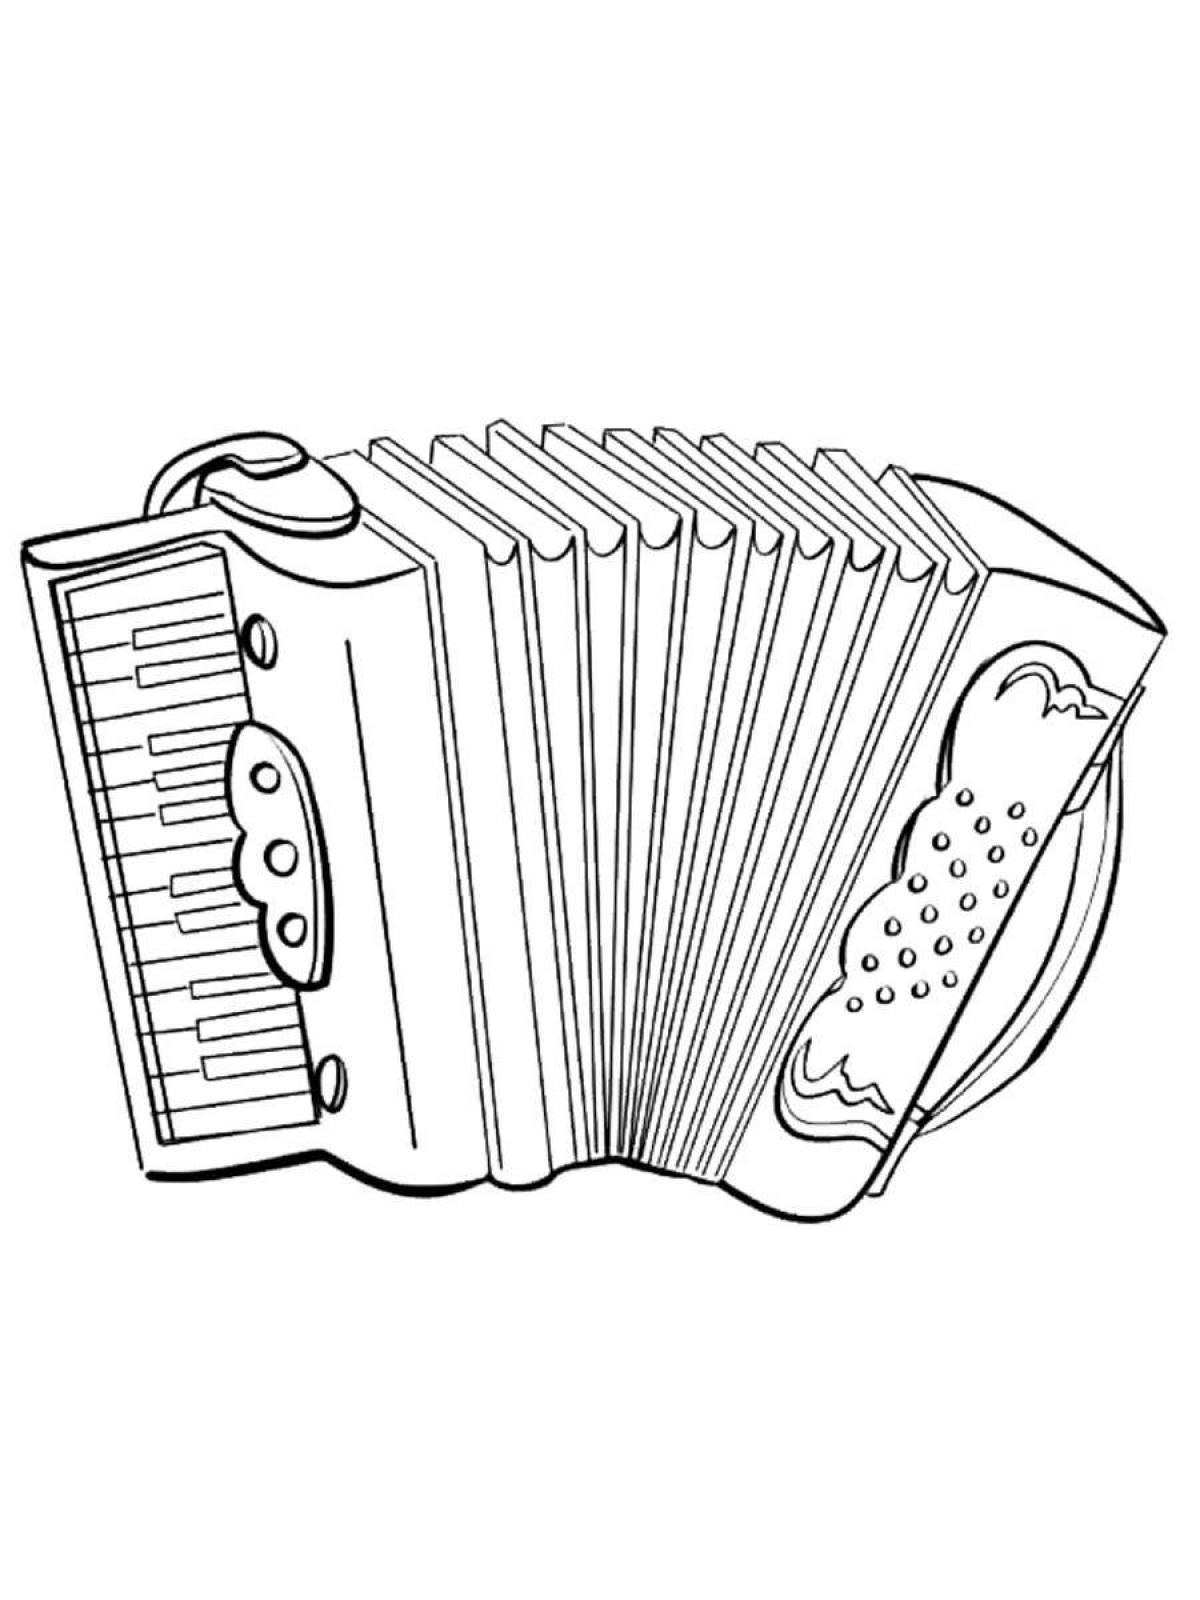 Художественные аккордеонные музыкальные инструменты для молодежи с этикетками